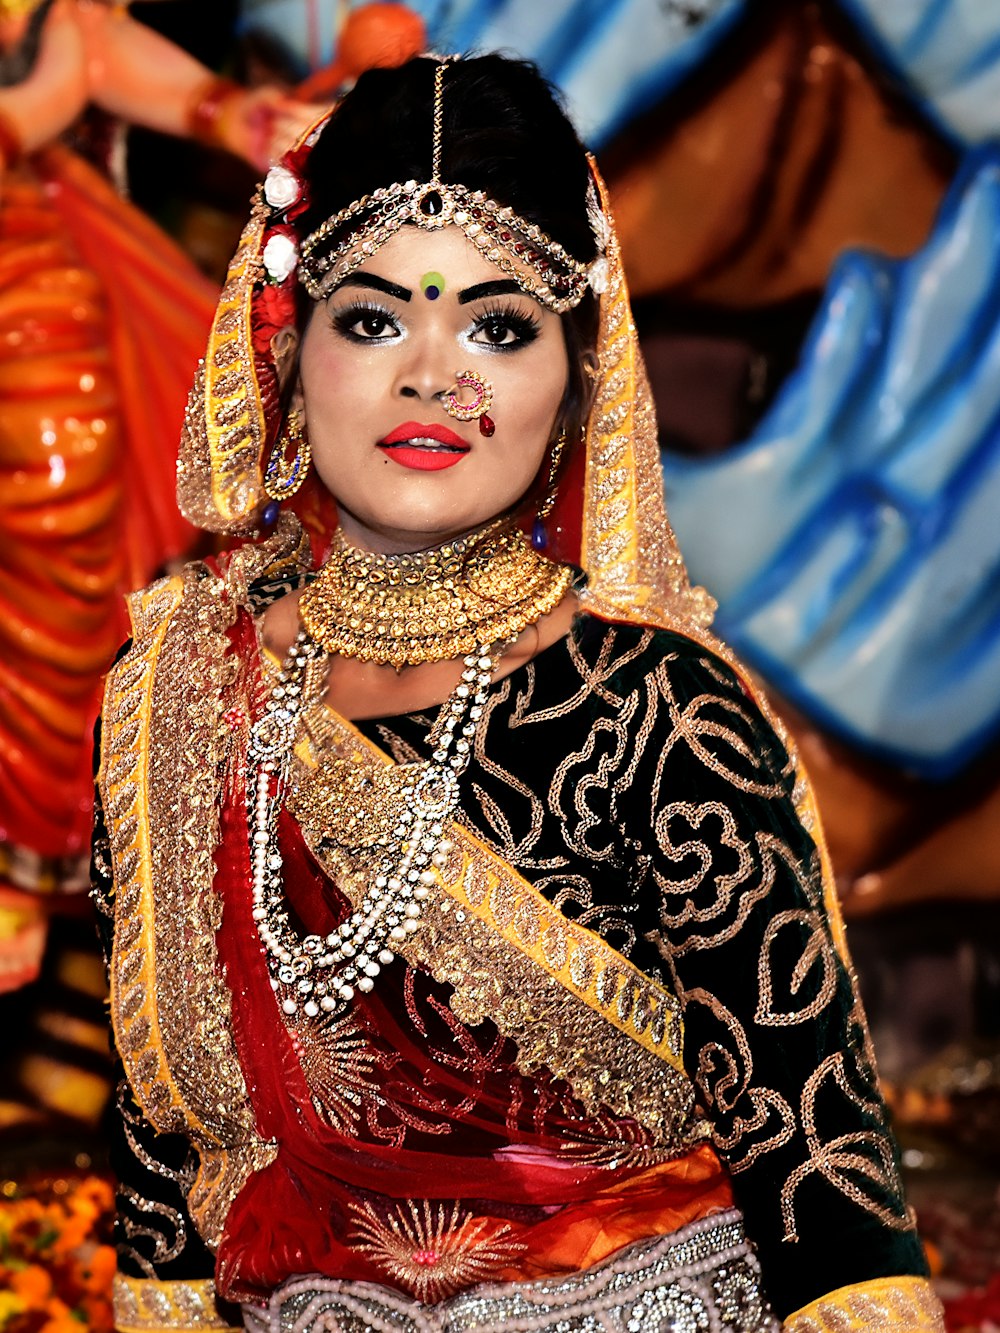 mulher no vestido sari vermelho e dourado